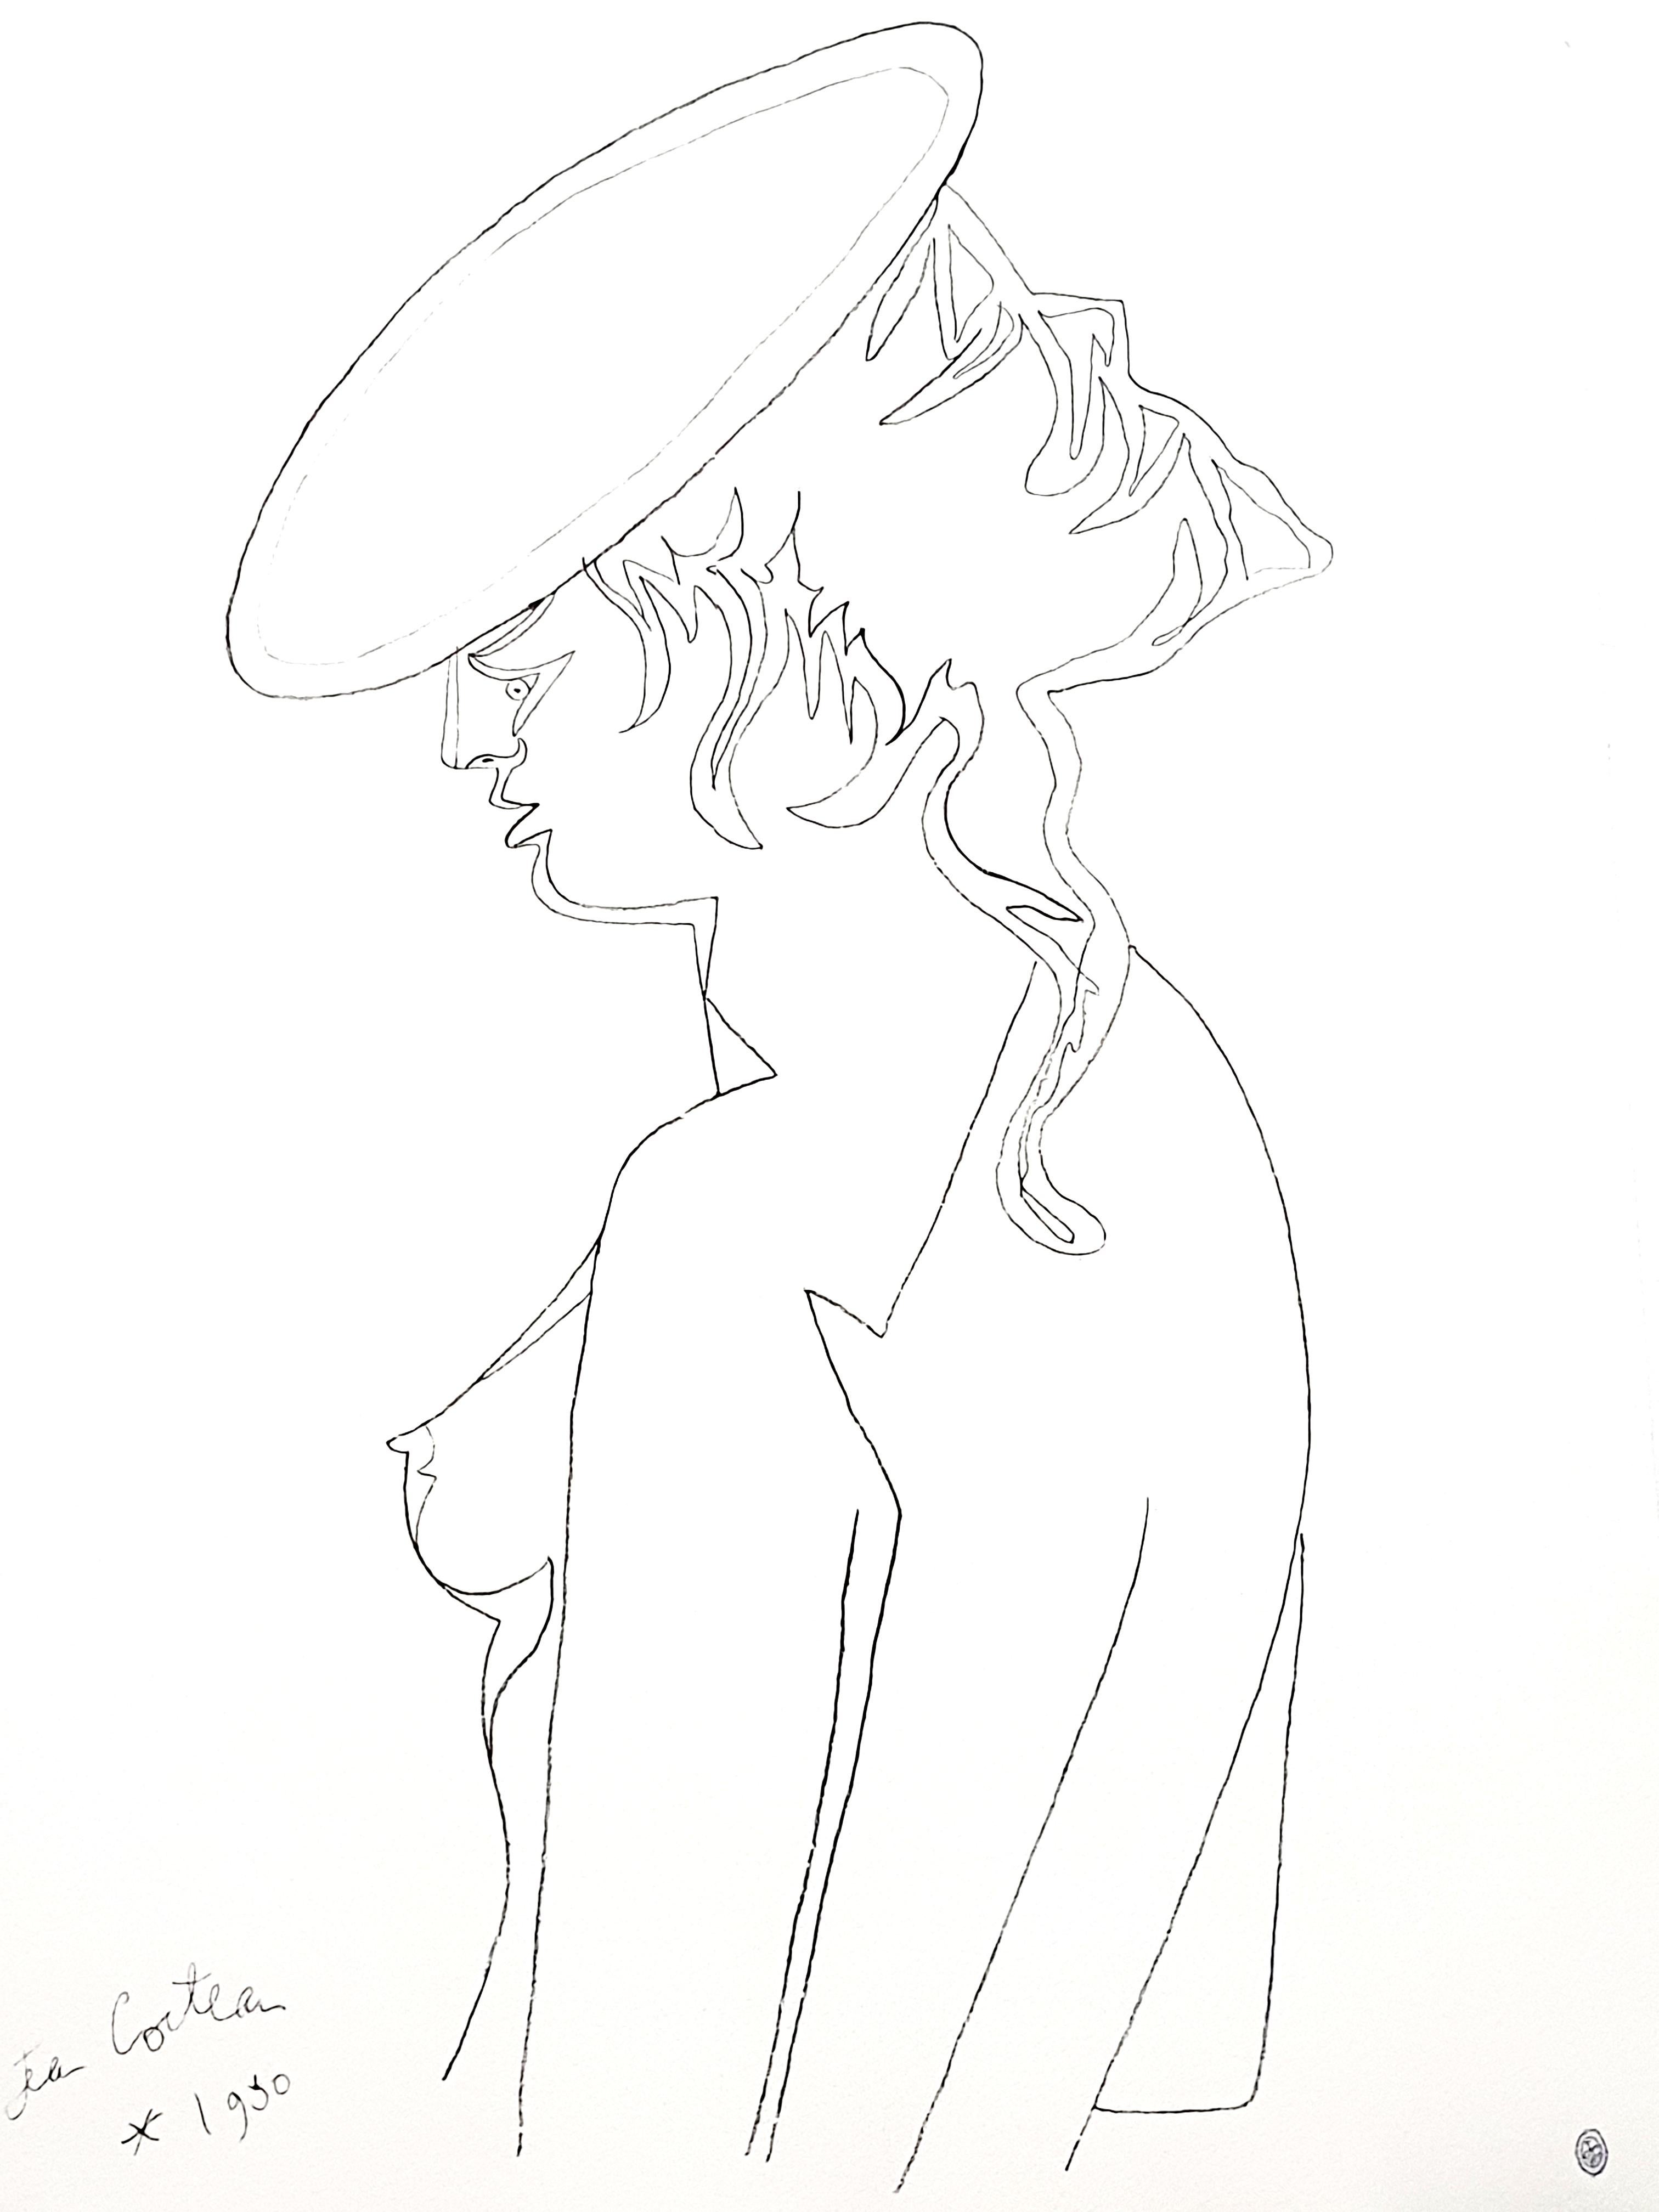 Original-Lithographie von Jean Cocteau
Titel: Profil
In der Platte signiert
Abmessungen: 65 x 44 cm

Jean Cocteau

Der Schriftsteller, Künstler und Filmregisseur Jean Cocteau war eine der einflussreichsten kreativen Figuren der Pariser Avantgarde